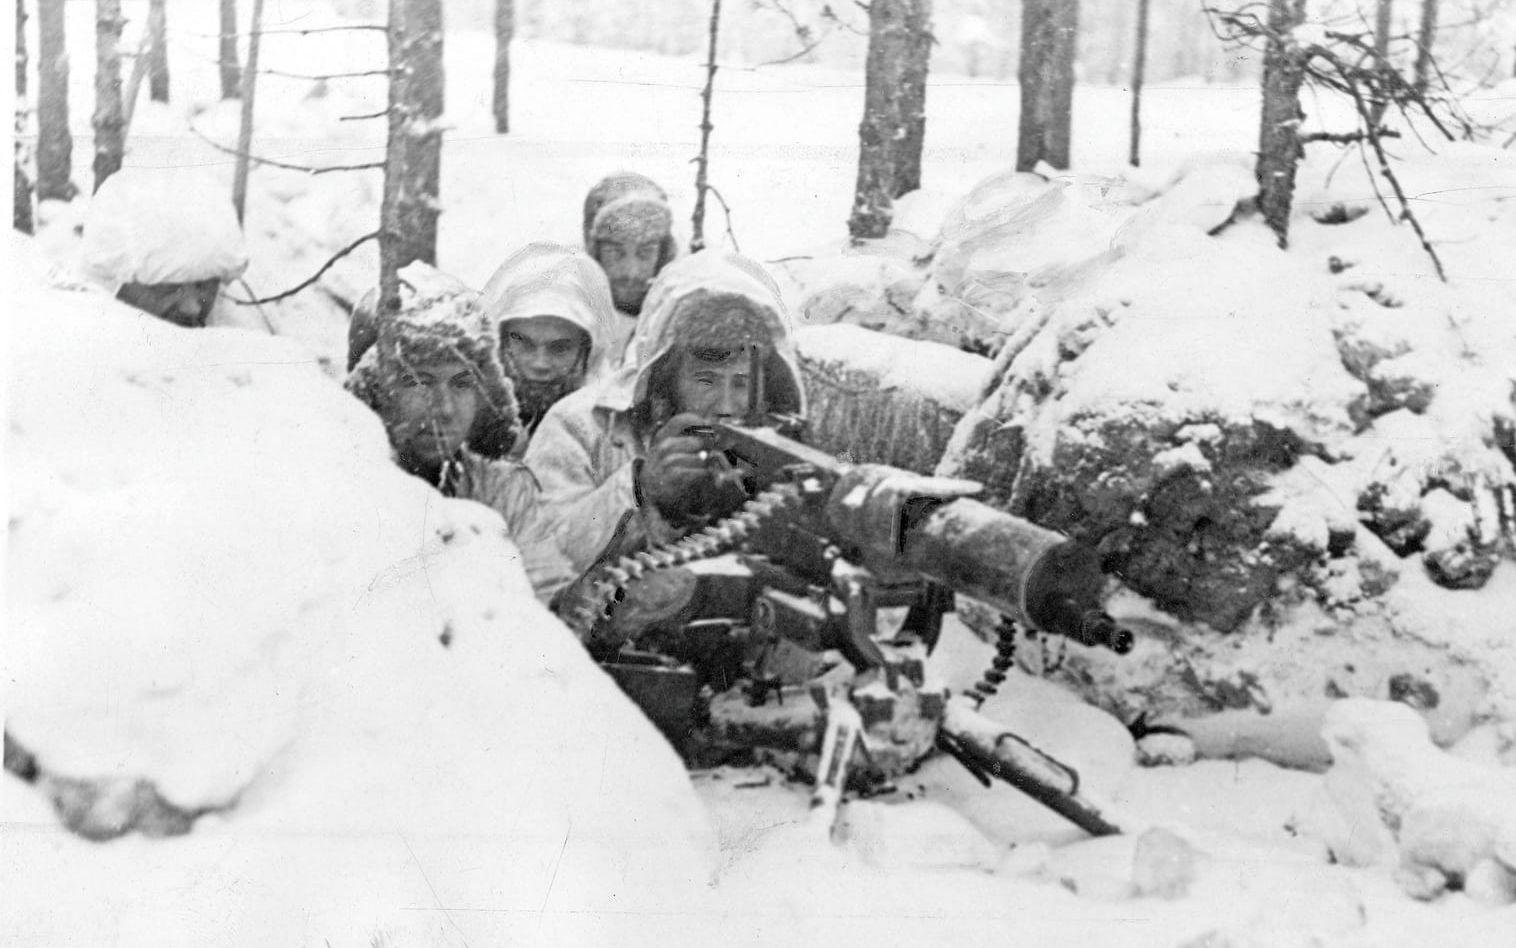 Finska vinterkriget bröt ut när Josef Stalin i slutet av 1930-talet ville att Finland skulle göra landavträdelser på Karelska näset. Sovjet bombade slutligen Helsingfors och kriget var ett faktum. På bilden syns finska soldater i ett kulsprutenäste.